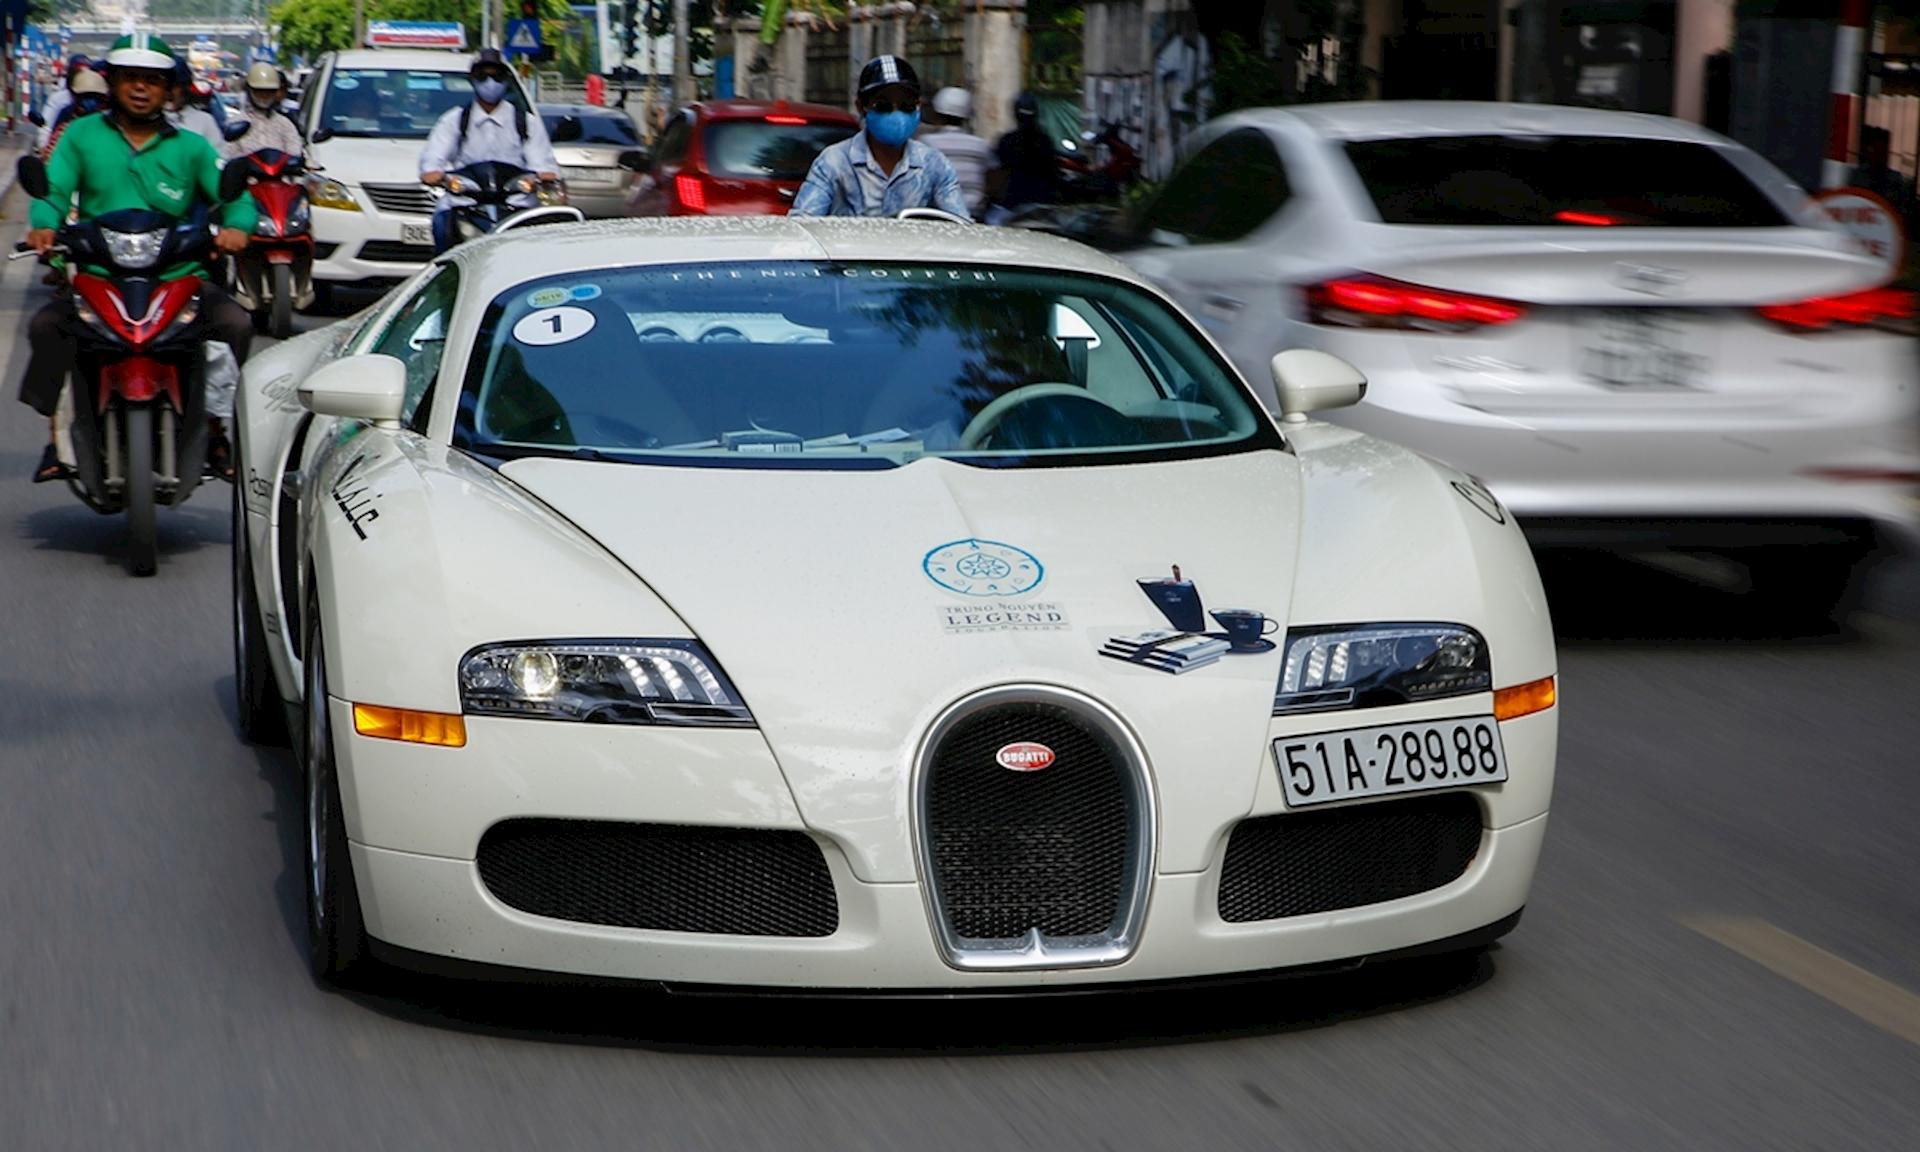 Siêu xe Bugatti Veyron của ông Đặng Lê Nguyên Vũ bất ngờ tái xuất